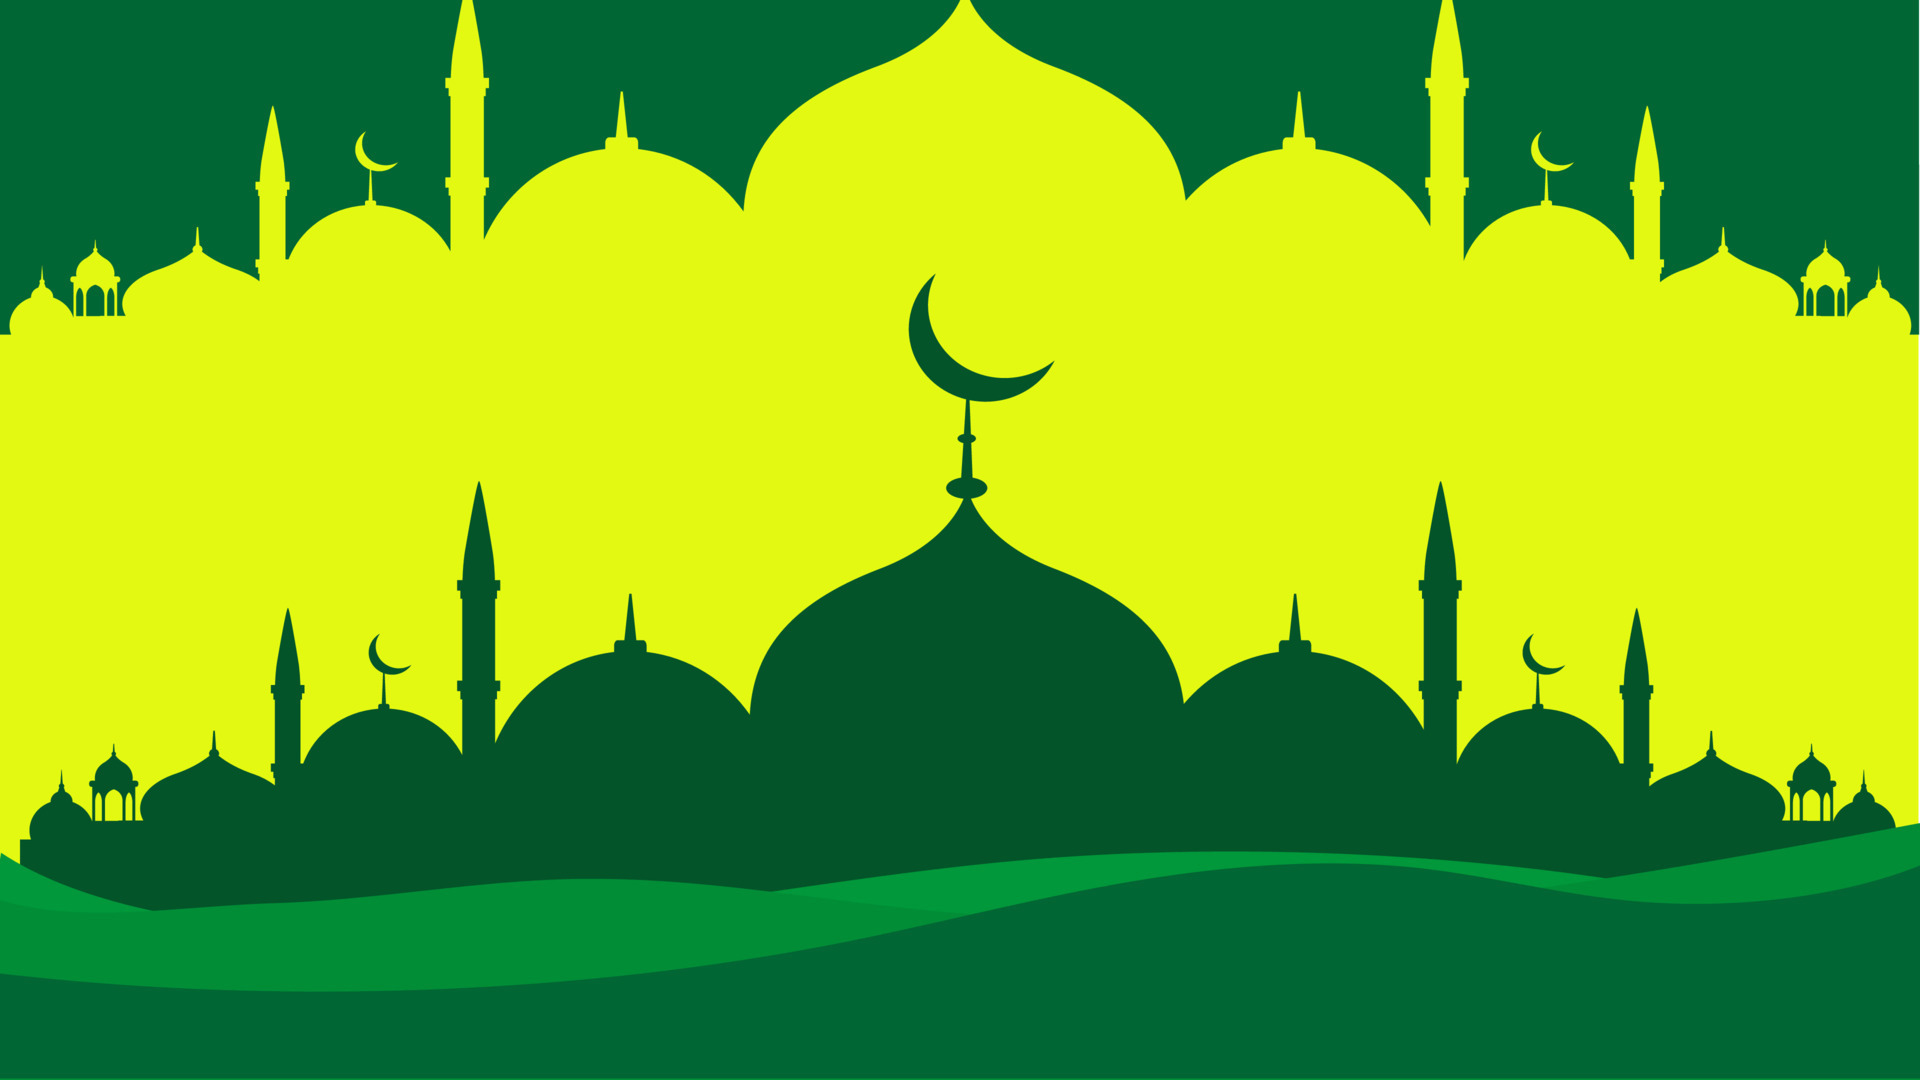 Đây chính là nền Islam màu xanh lá tinh tế nhất cho Ramadan Kareem mà bạn sẽ không thể bỏ qua. Không chỉ khiến cho không gian của bạn trở nên thêm phong cách và thanh lịch, màu sắc xanh lá còn giúp cho bạn cảm thấy bình yên và thư giãn hơn. Hãy để mùa Ramadan này thật tuyệt vời nhờ vào hình ảnh nền Islam này.